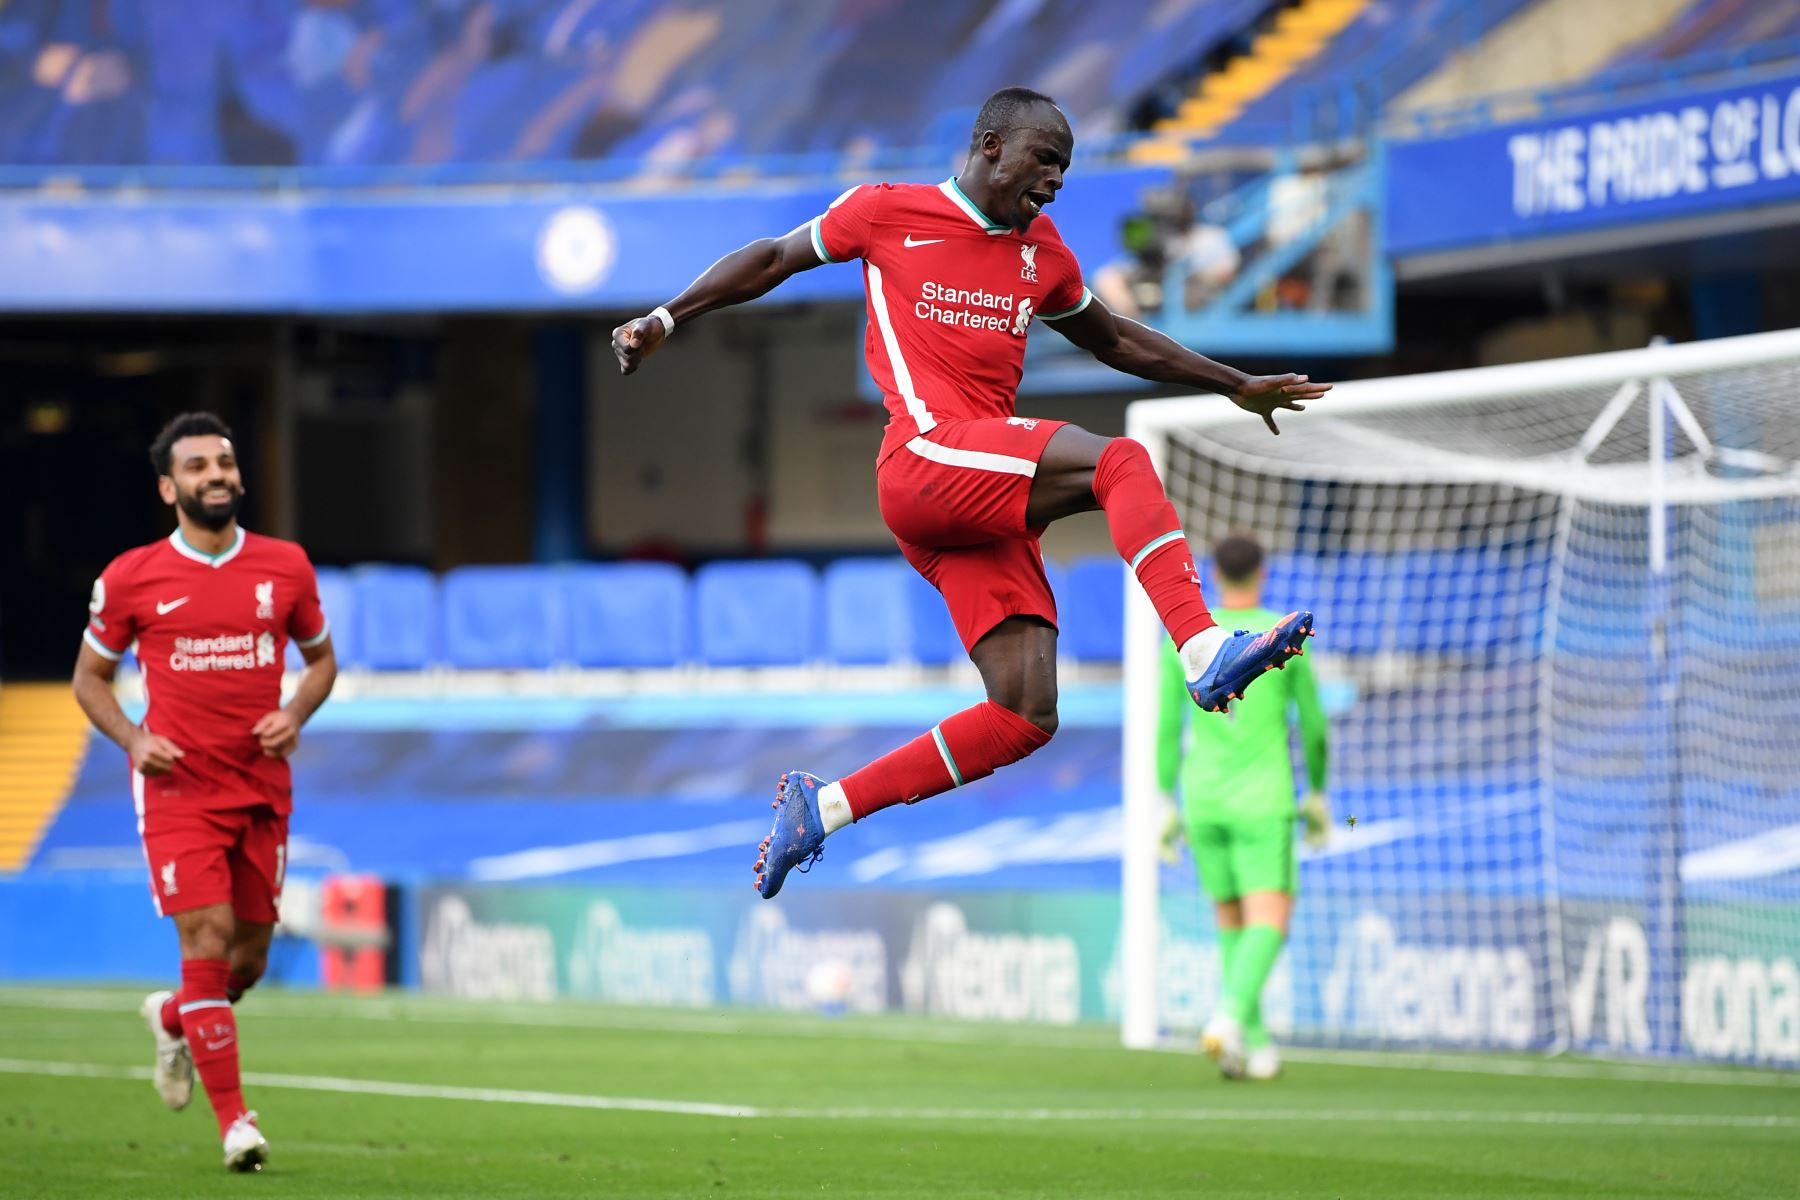 El delantero senegalés de Liverpool, Sadio Mane, celebra después de anotar su segundo gol durante el partido de fútbol de la Premier League inglesa. Foto: AFP